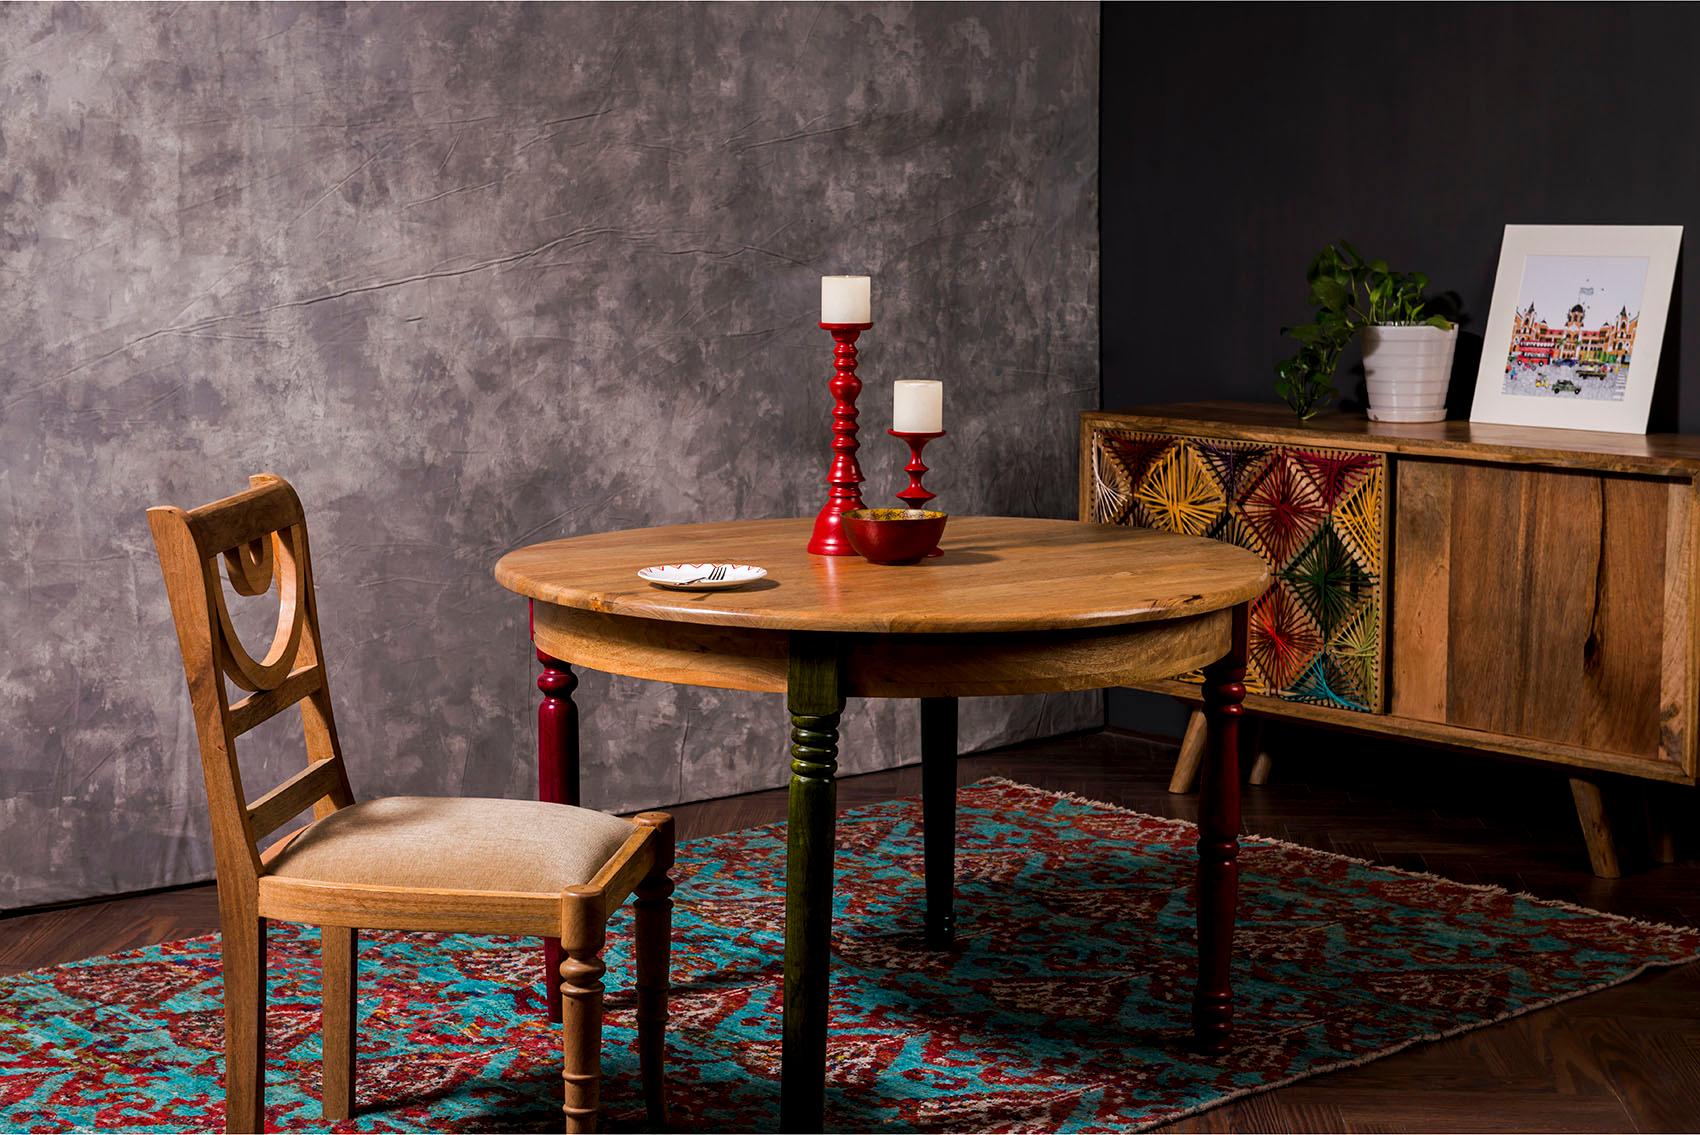 Home affaire Esstisch Fiore, mit runder Tischplatte und vier verschieden farbigen Tischbeinen, Breite 120 cm